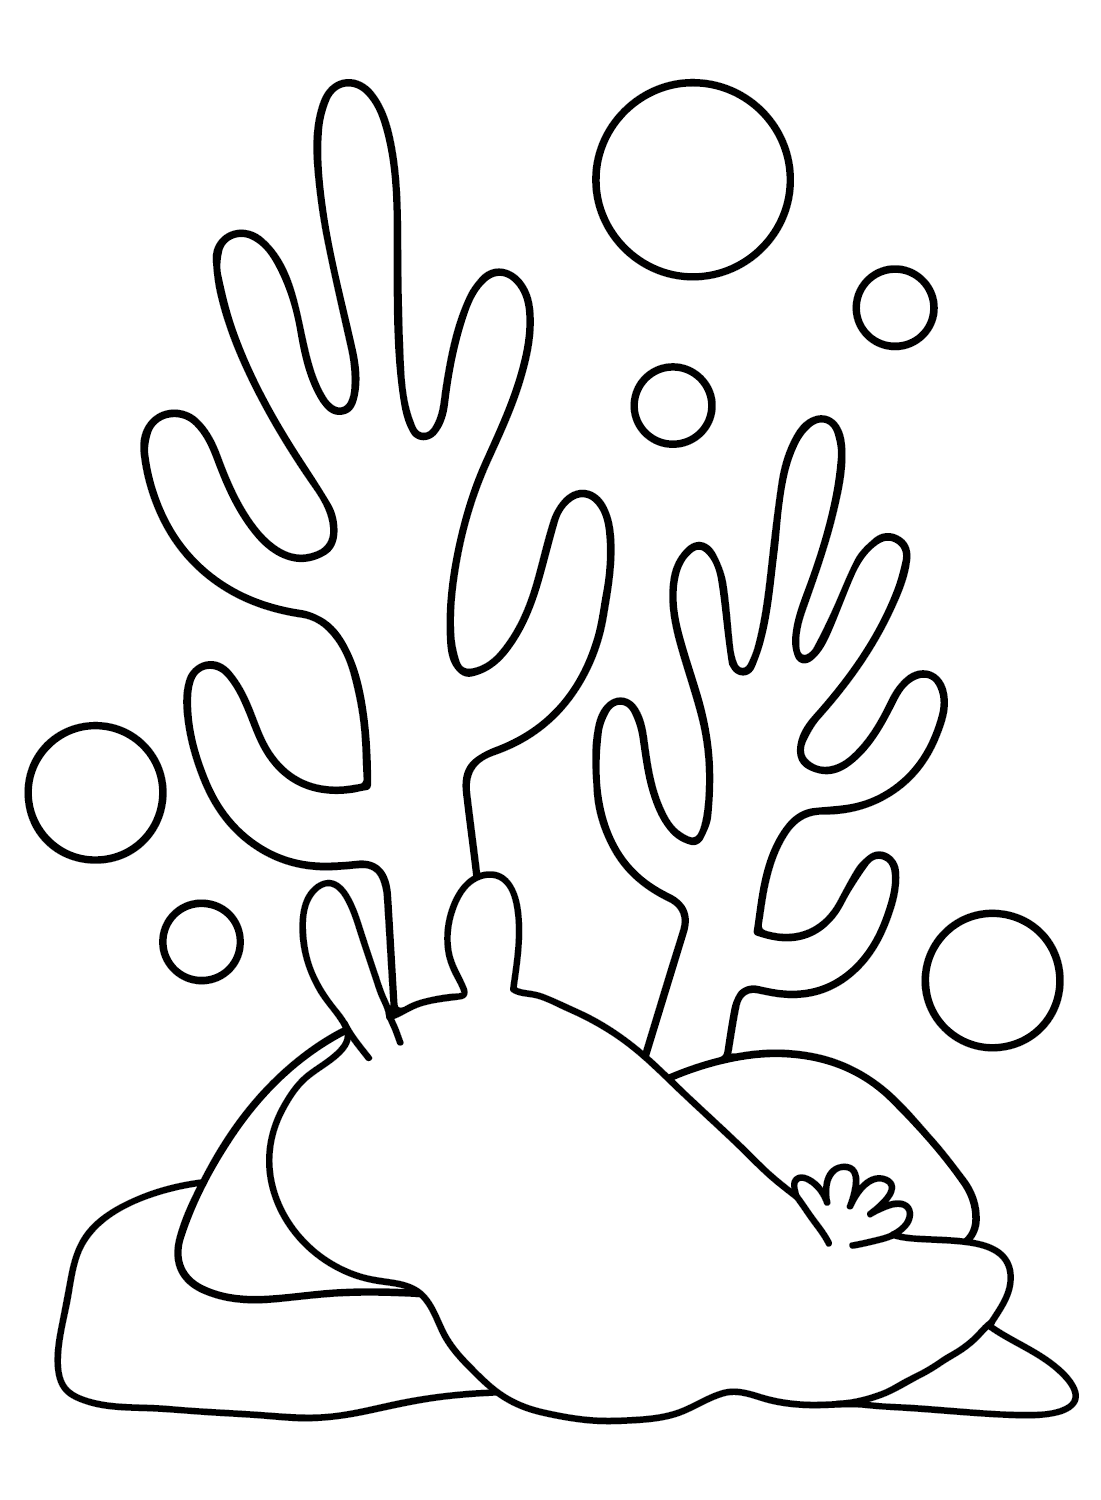 The Sea Slug Coloring Pages